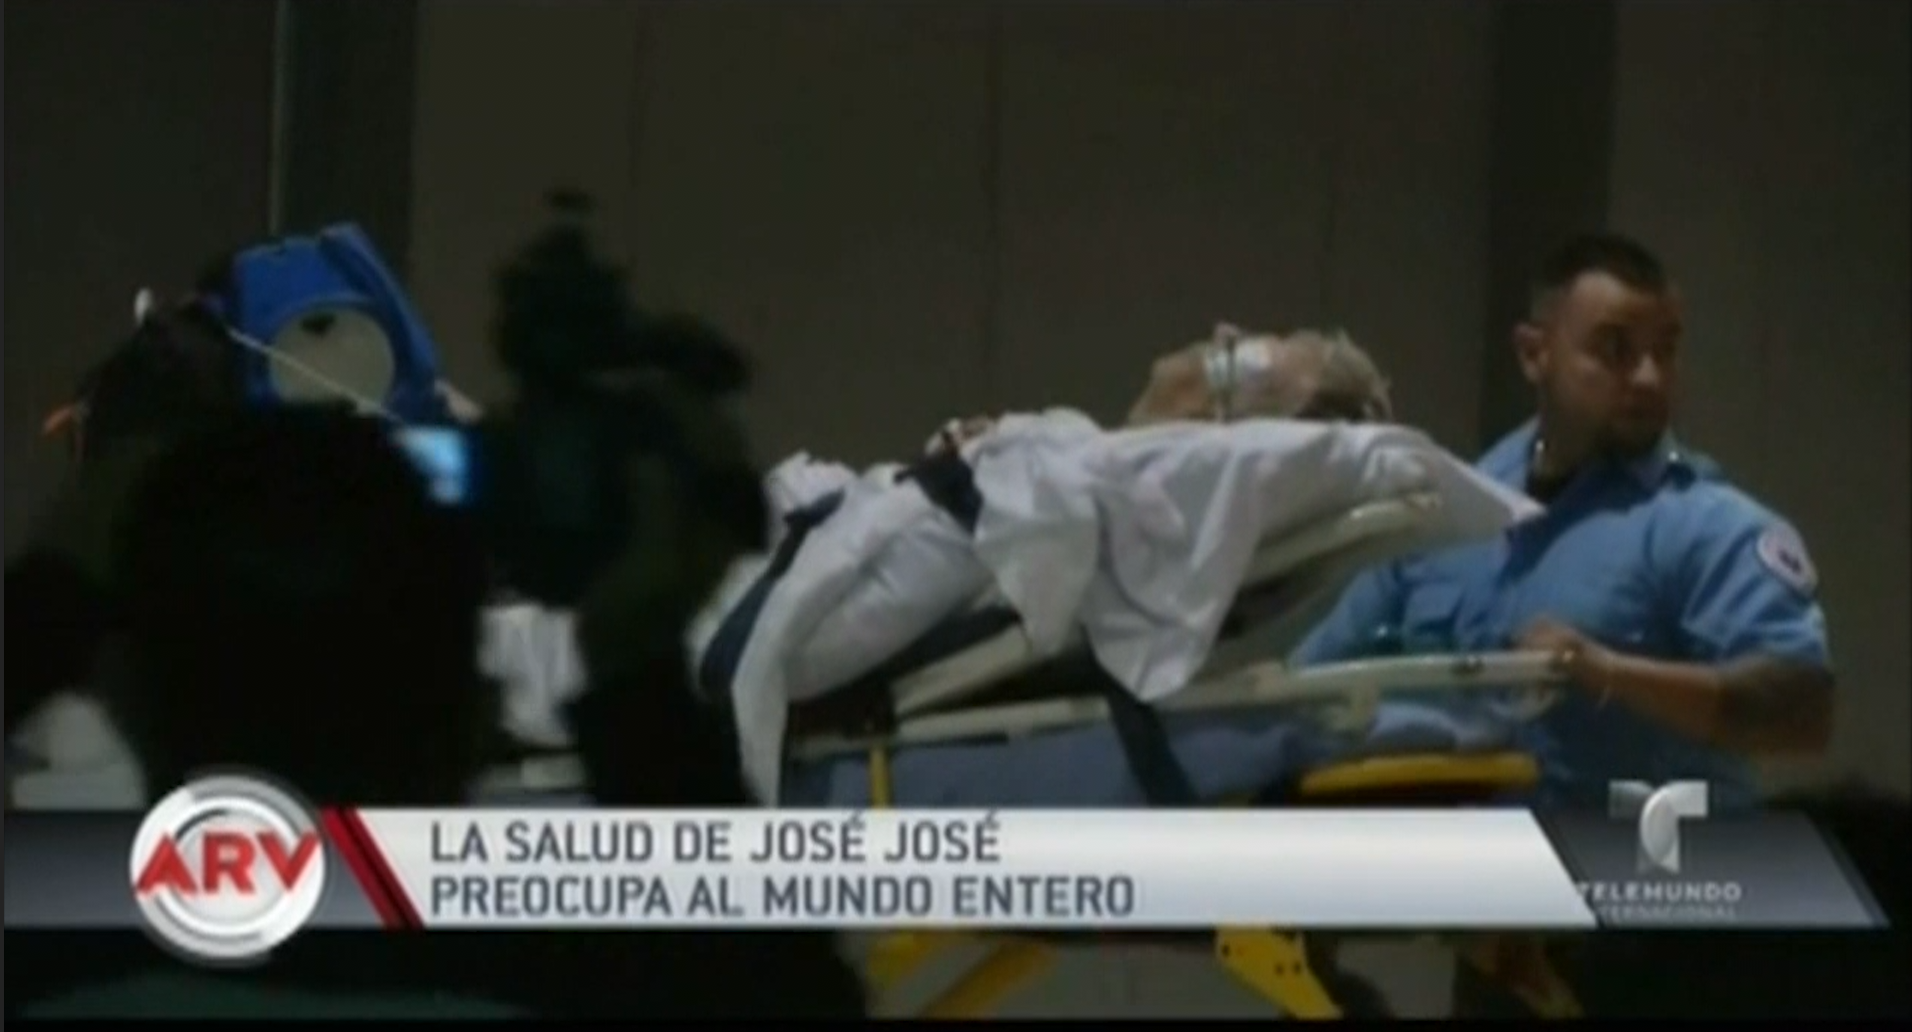 La Salud De José José Preocupa Al Mundo